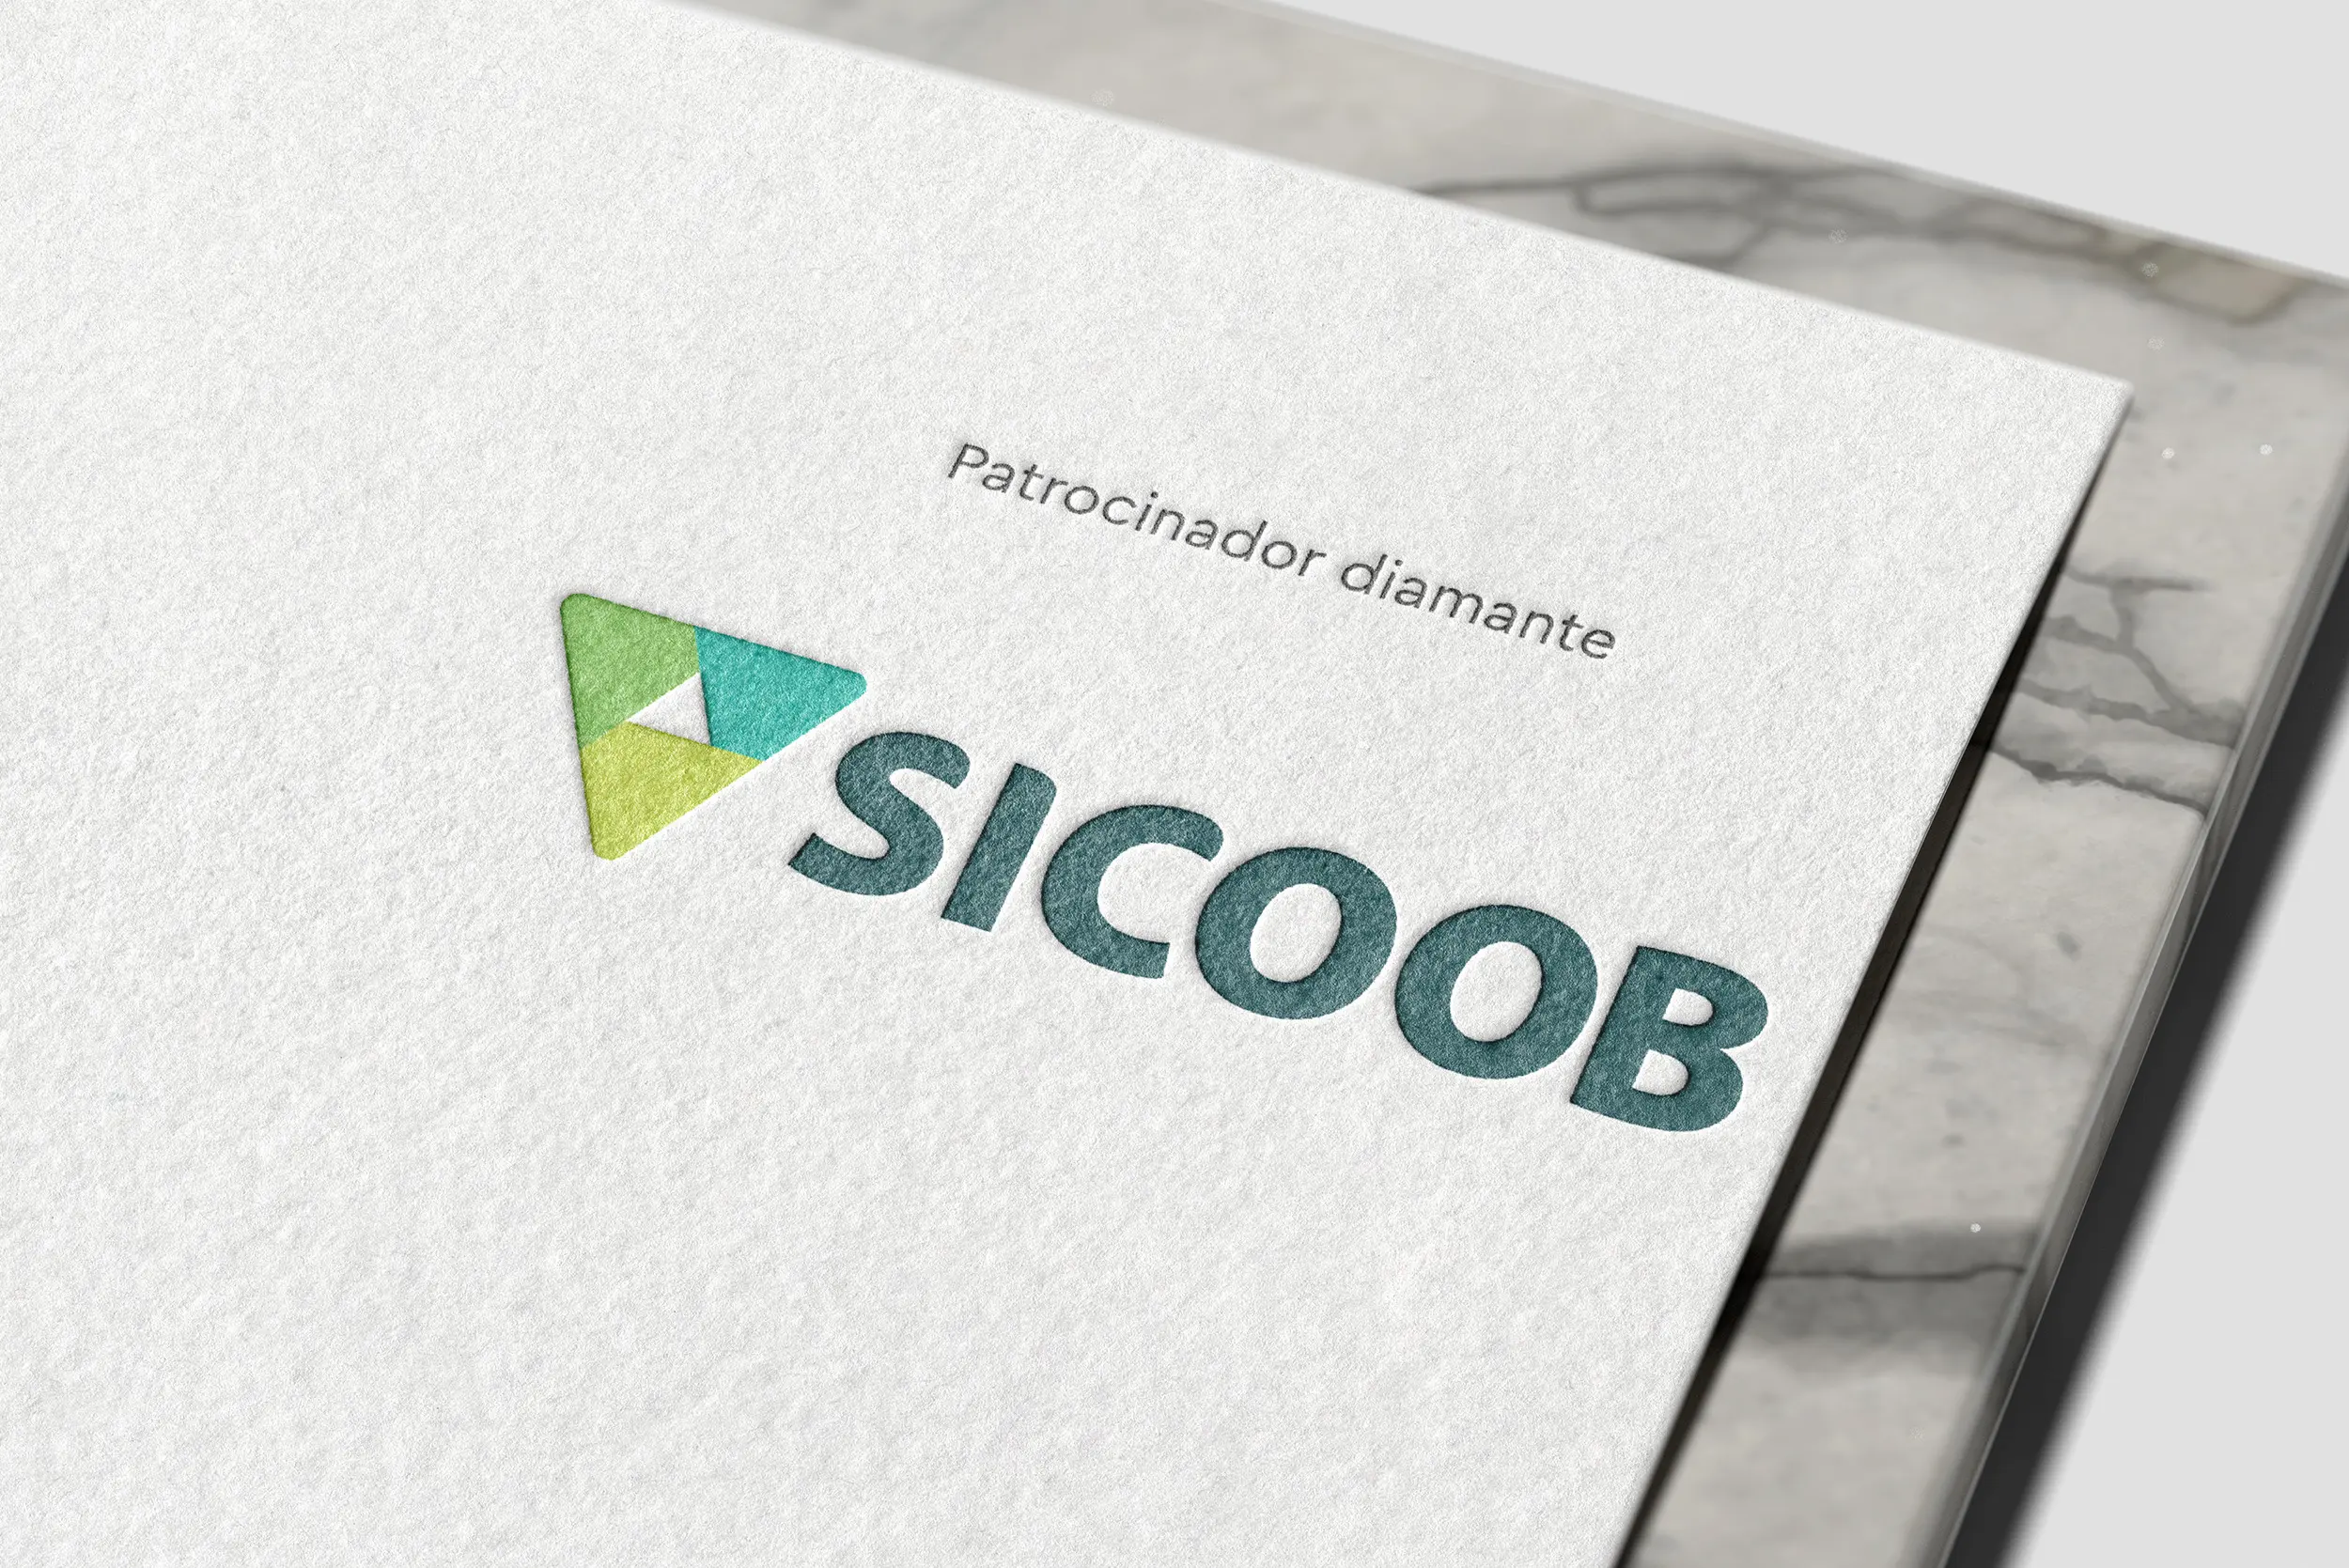 ABRA e Sicoob: parceria e planos promissores